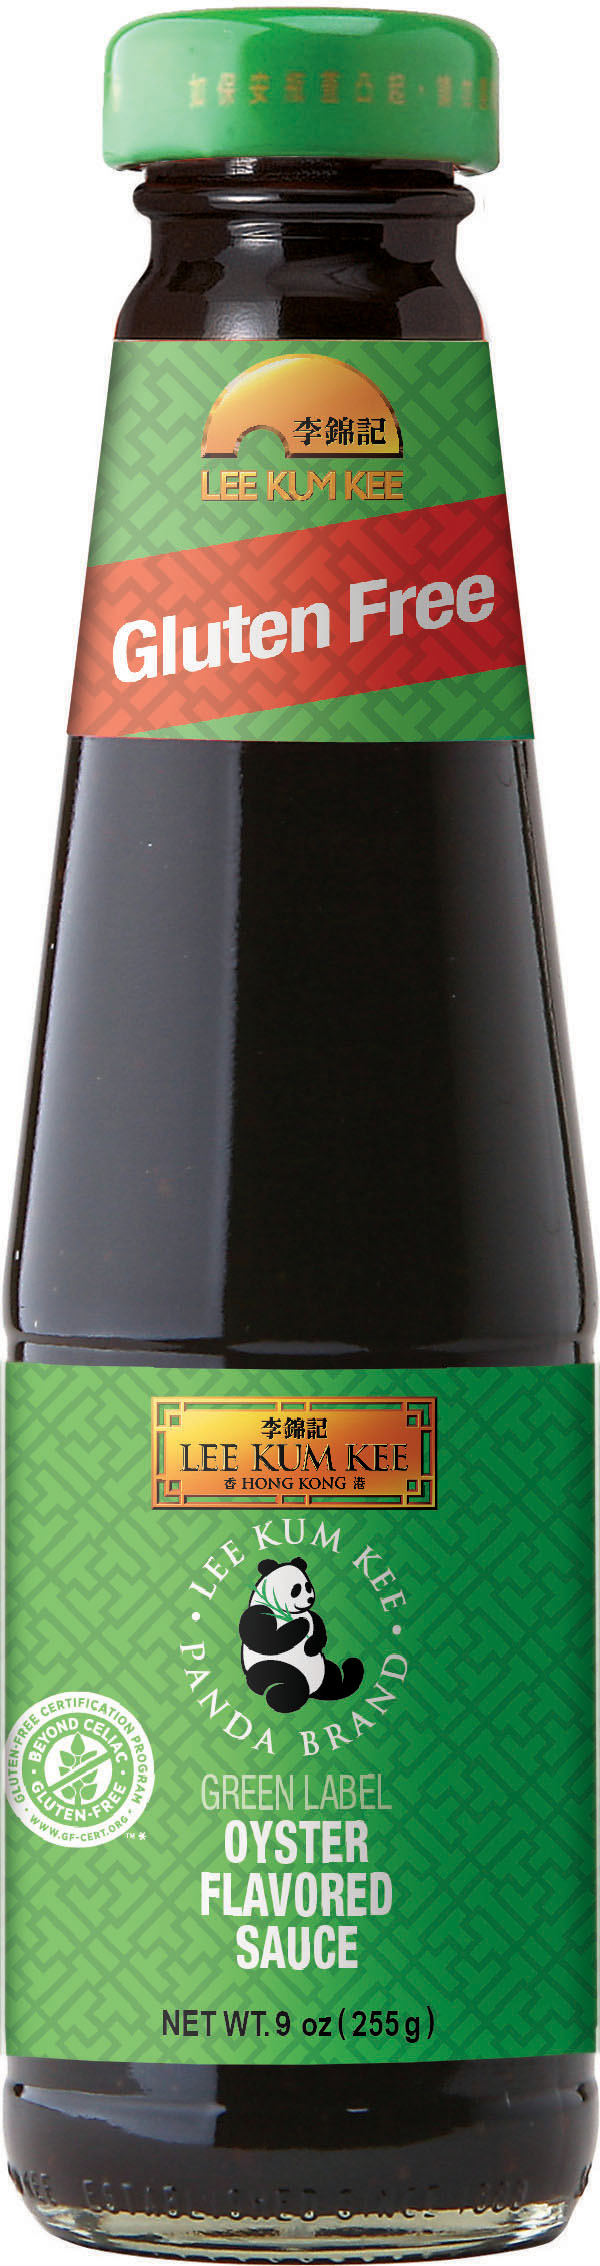 熊貓牌綠色新裝蠔油, 9 oz (255 g) 瓶裝